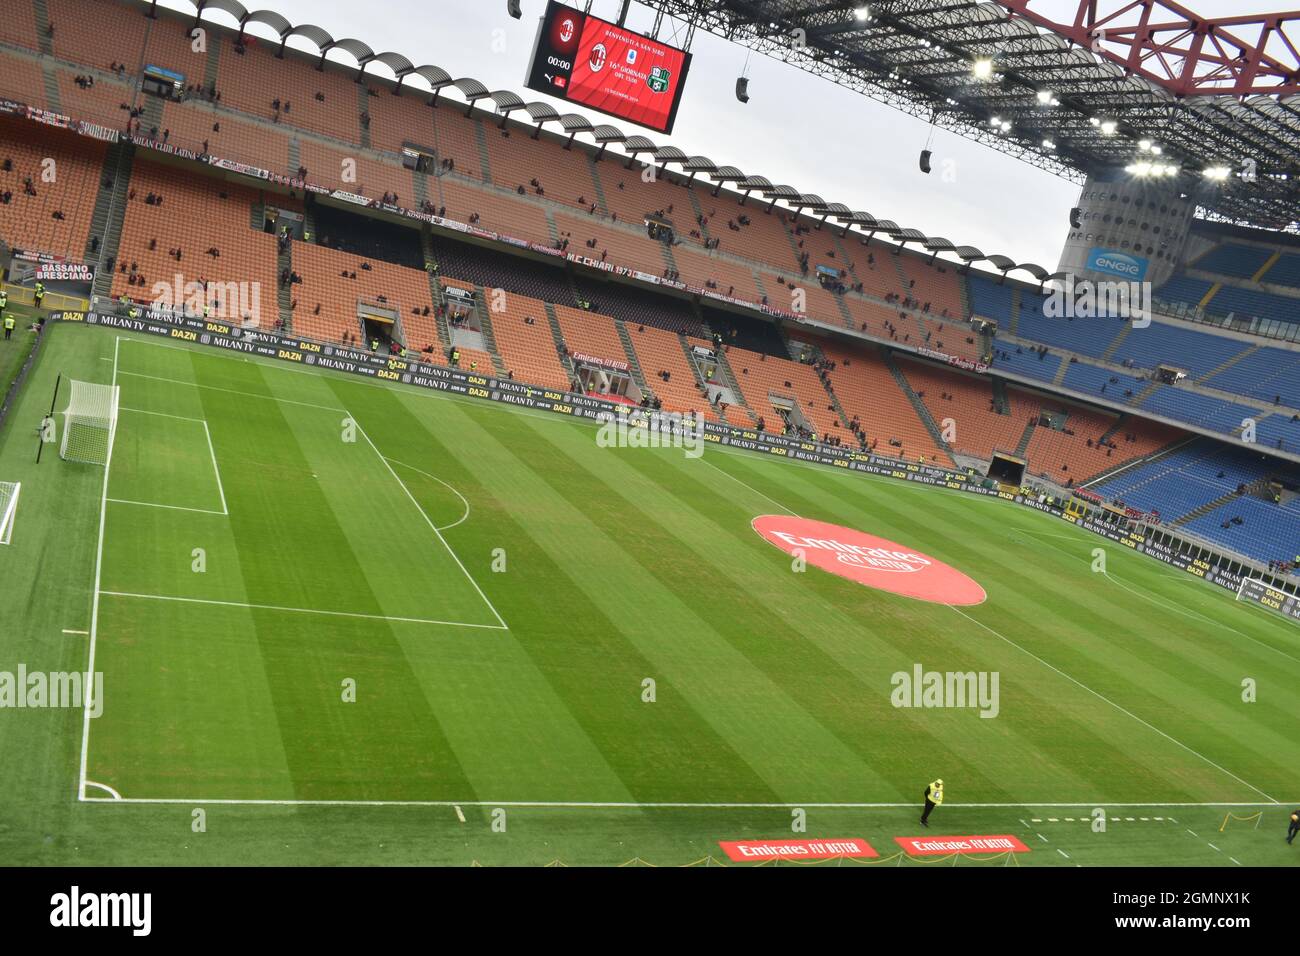 Im Inneren von San Siro/Giuseppe Meazza, AC Milan & Inter Mailand Stadion Stockfoto